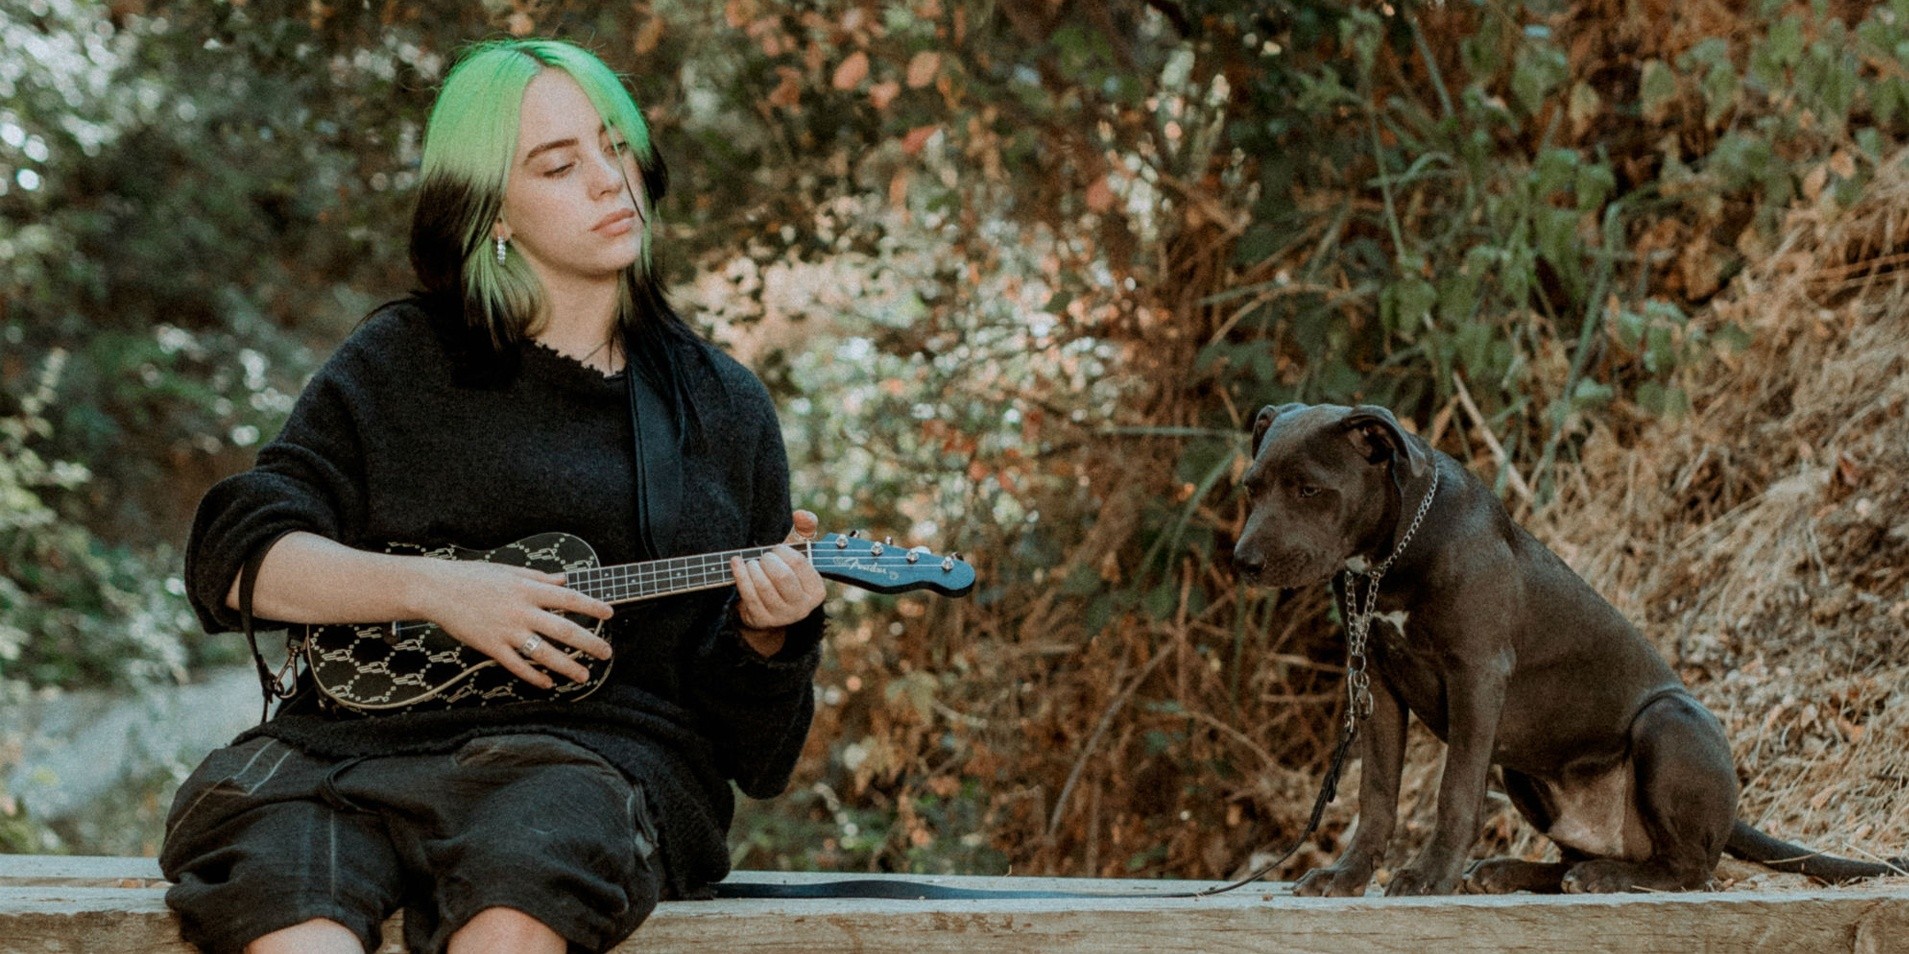 Billie Eilish launches signature ukulele with Fender